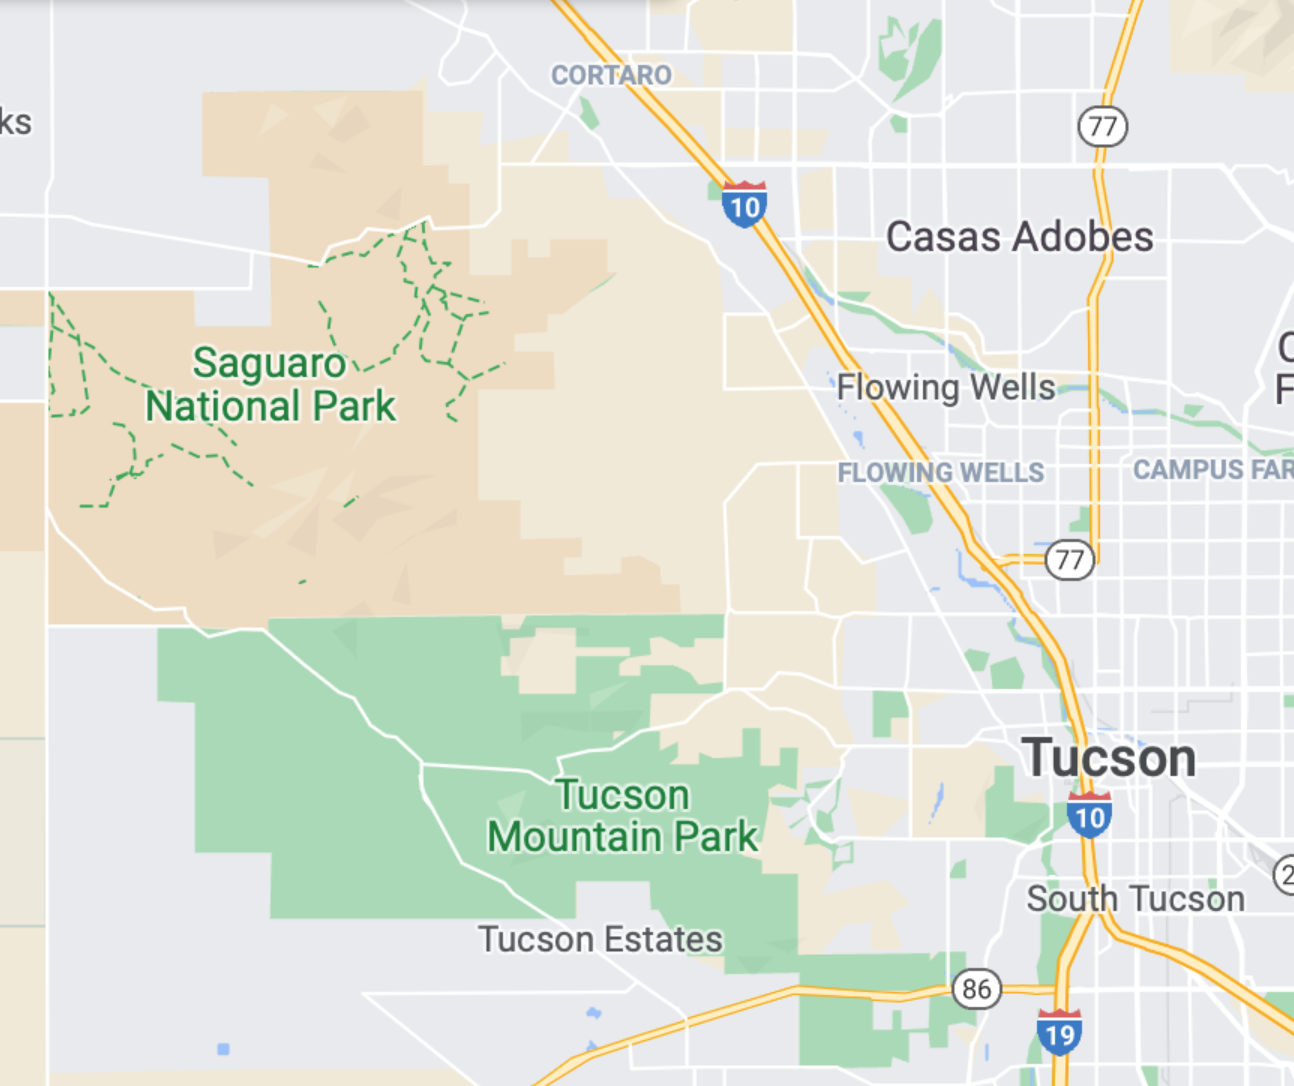 Map of Saguaro National Park